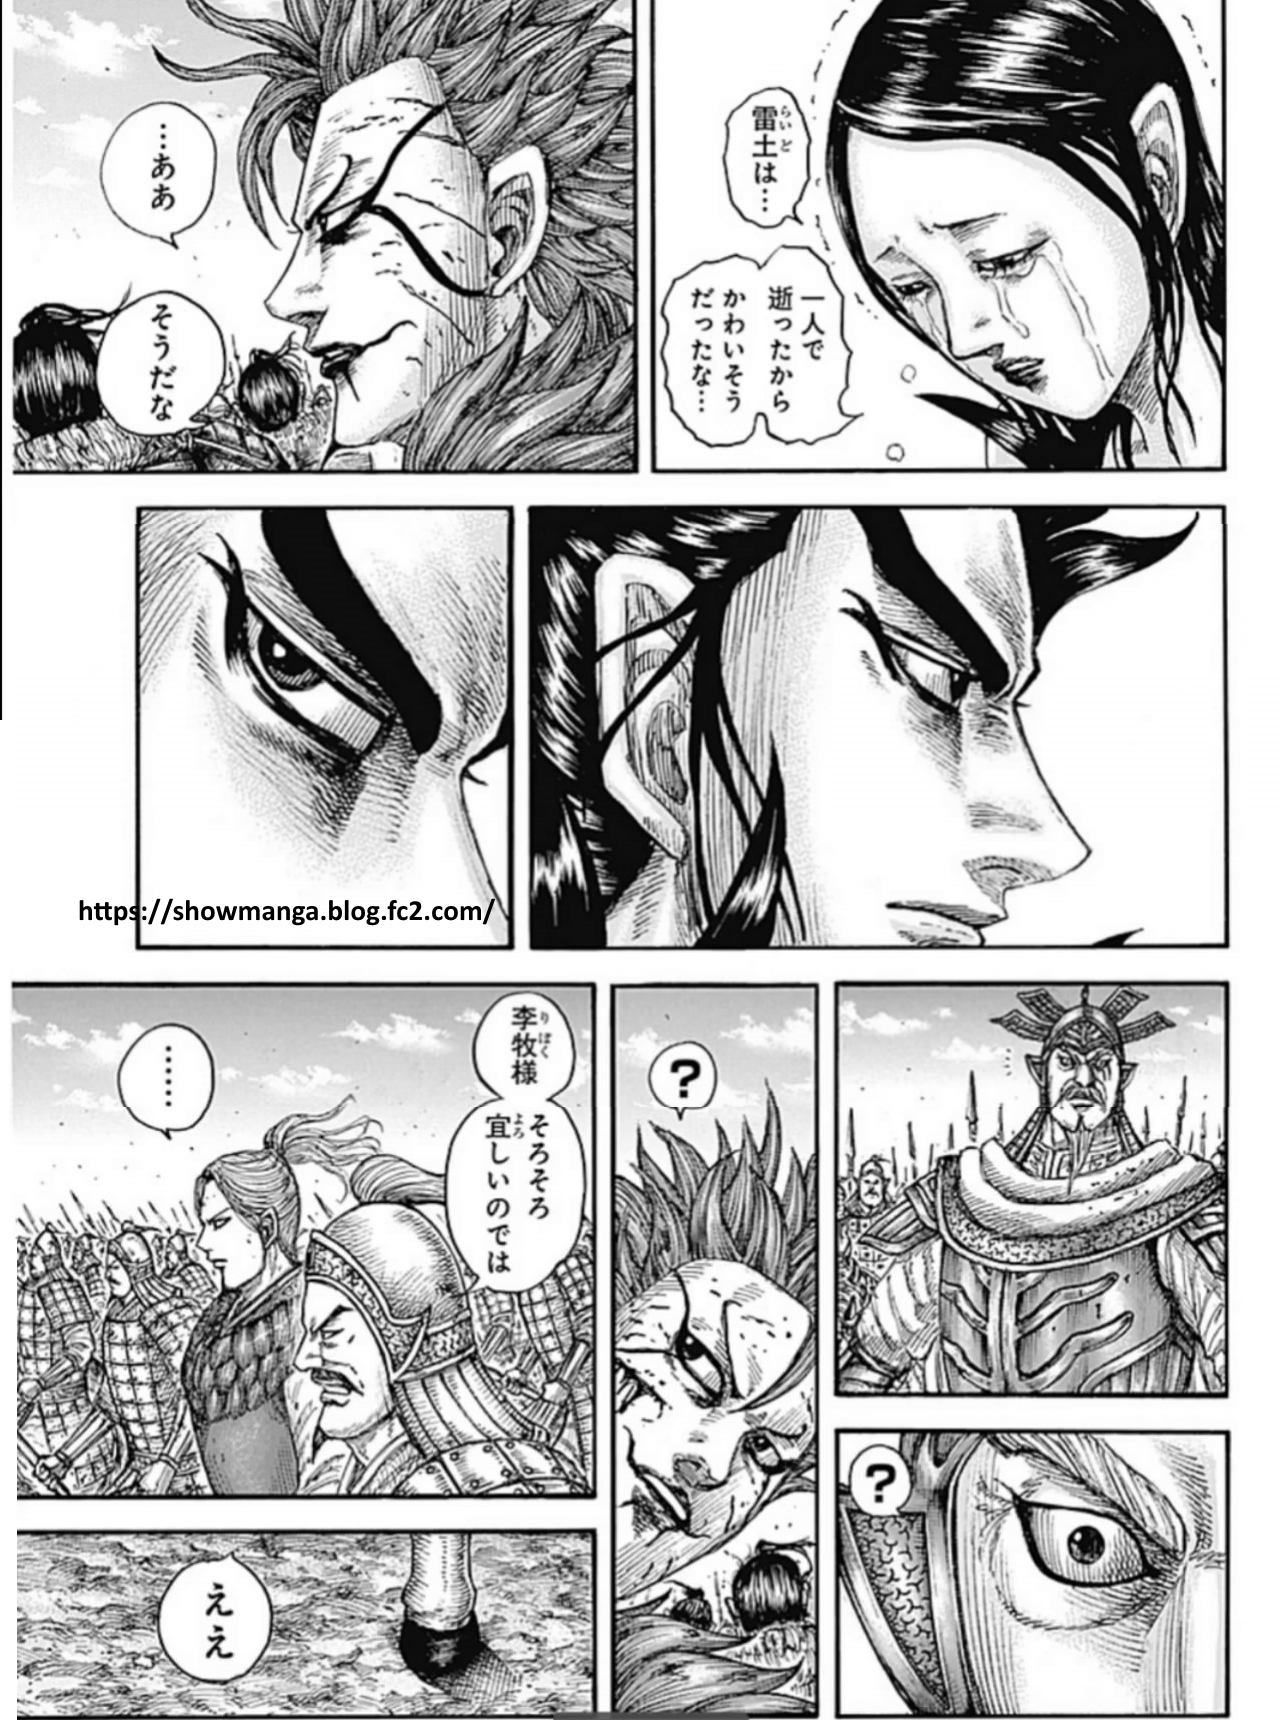 漫画 『キングダム』【第751話】 日本語 RAW - manga Kingdom Chapter 